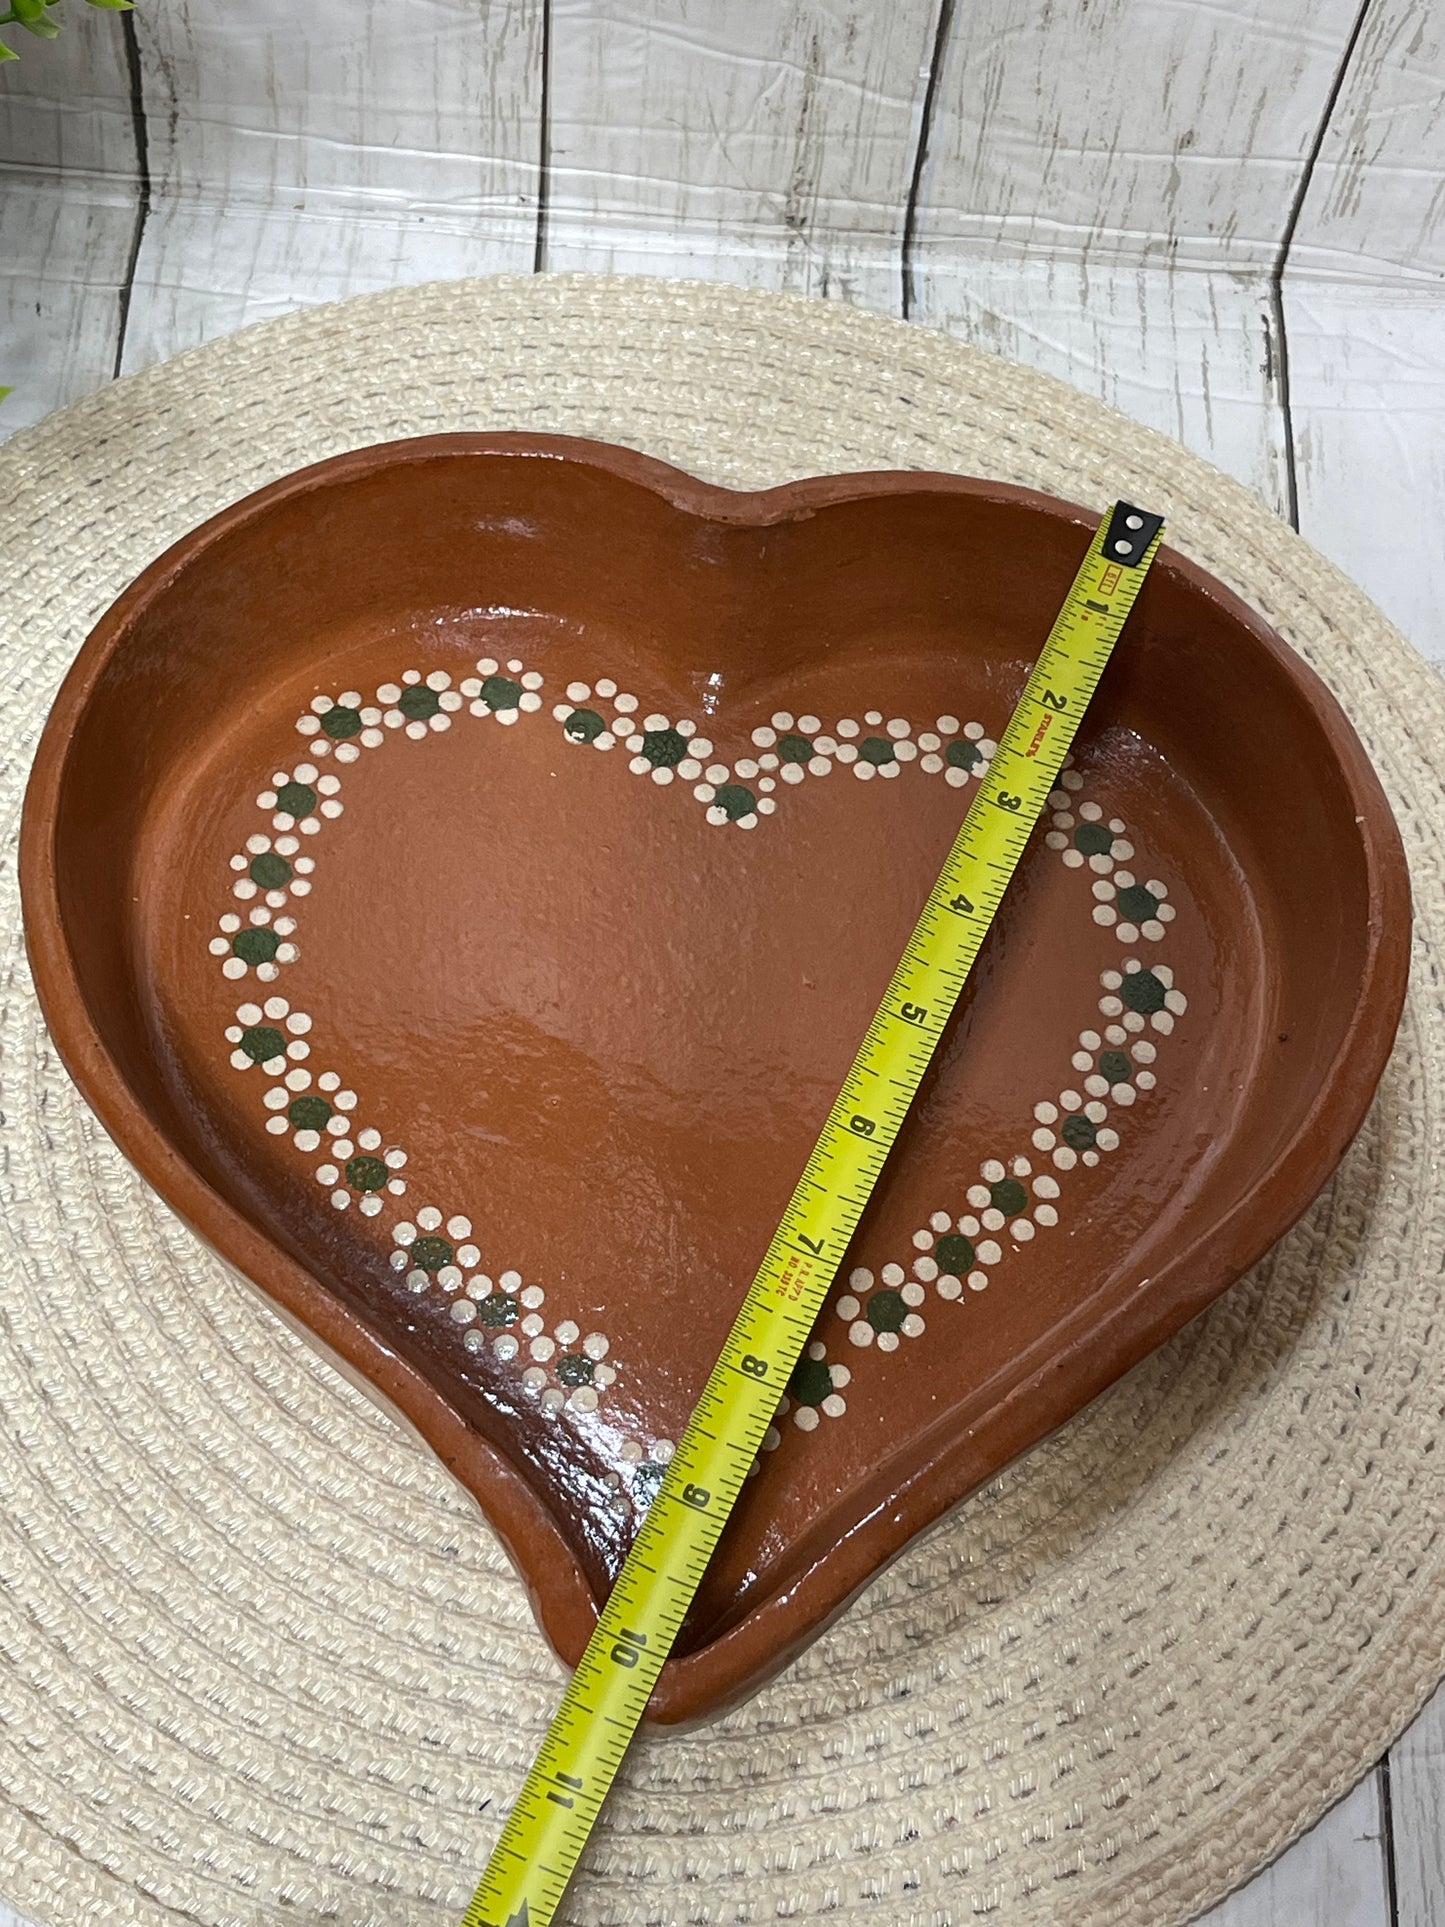 2pc- Mexico Rustic Terracotta corazón/heart plate/Plato corazon de barro-26cm